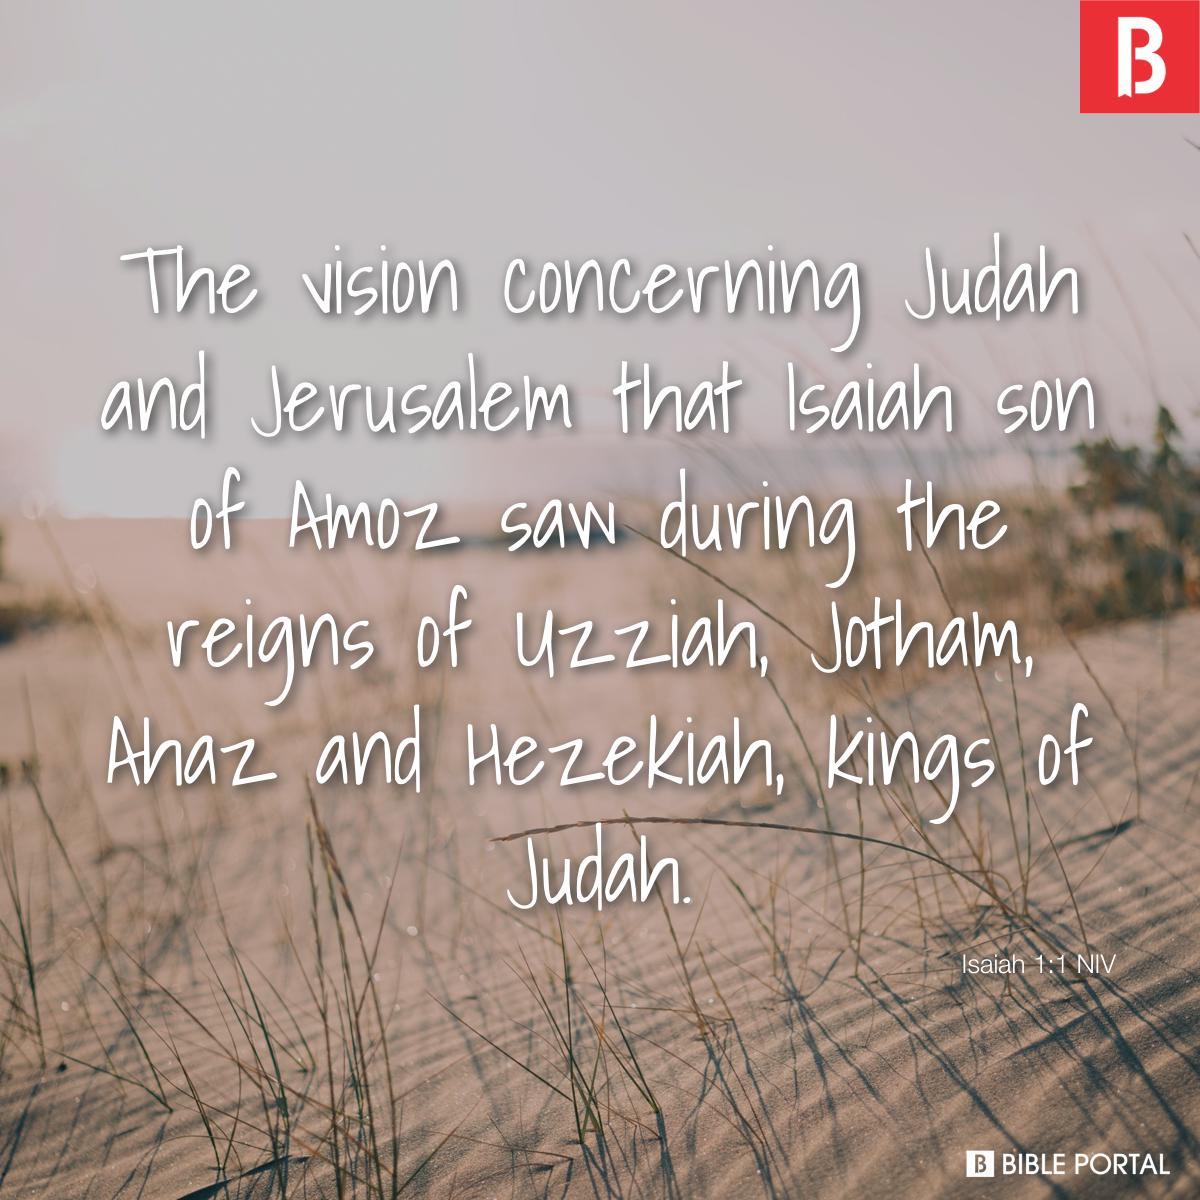 Isaiah 1:1 NIV